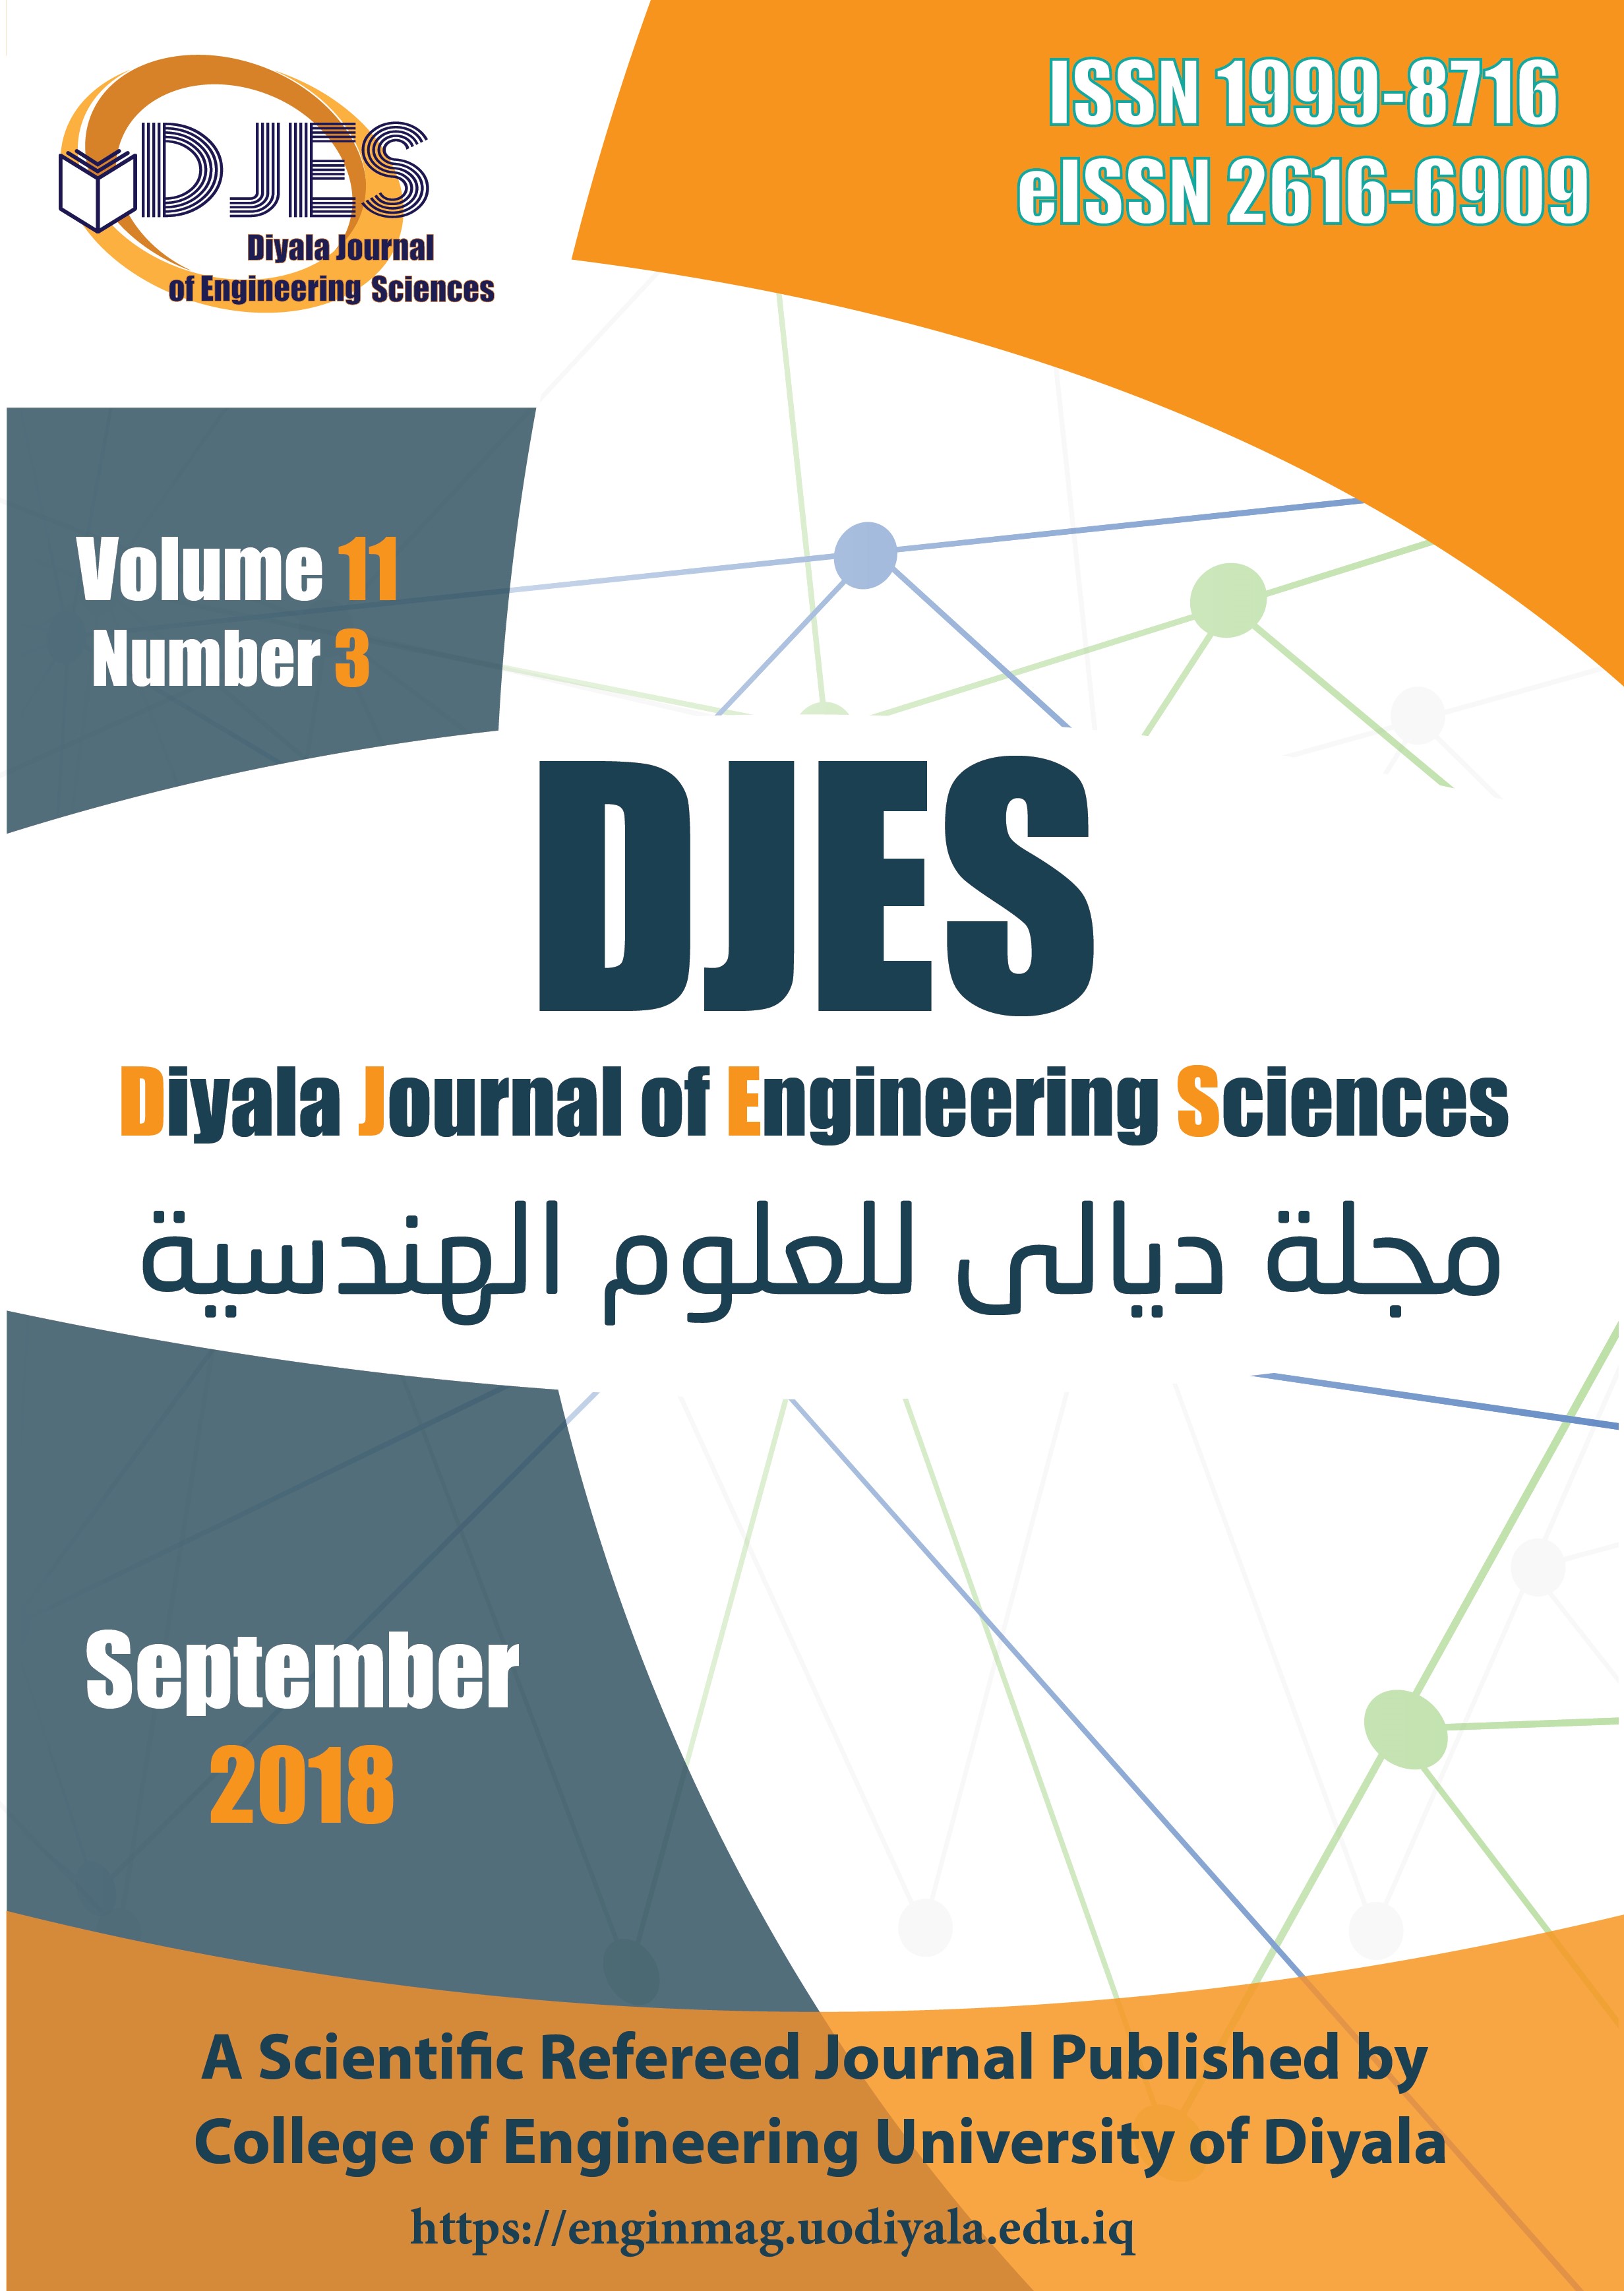 Diyala Journal of Engineering Sciences vol.11, No.3, September 2018